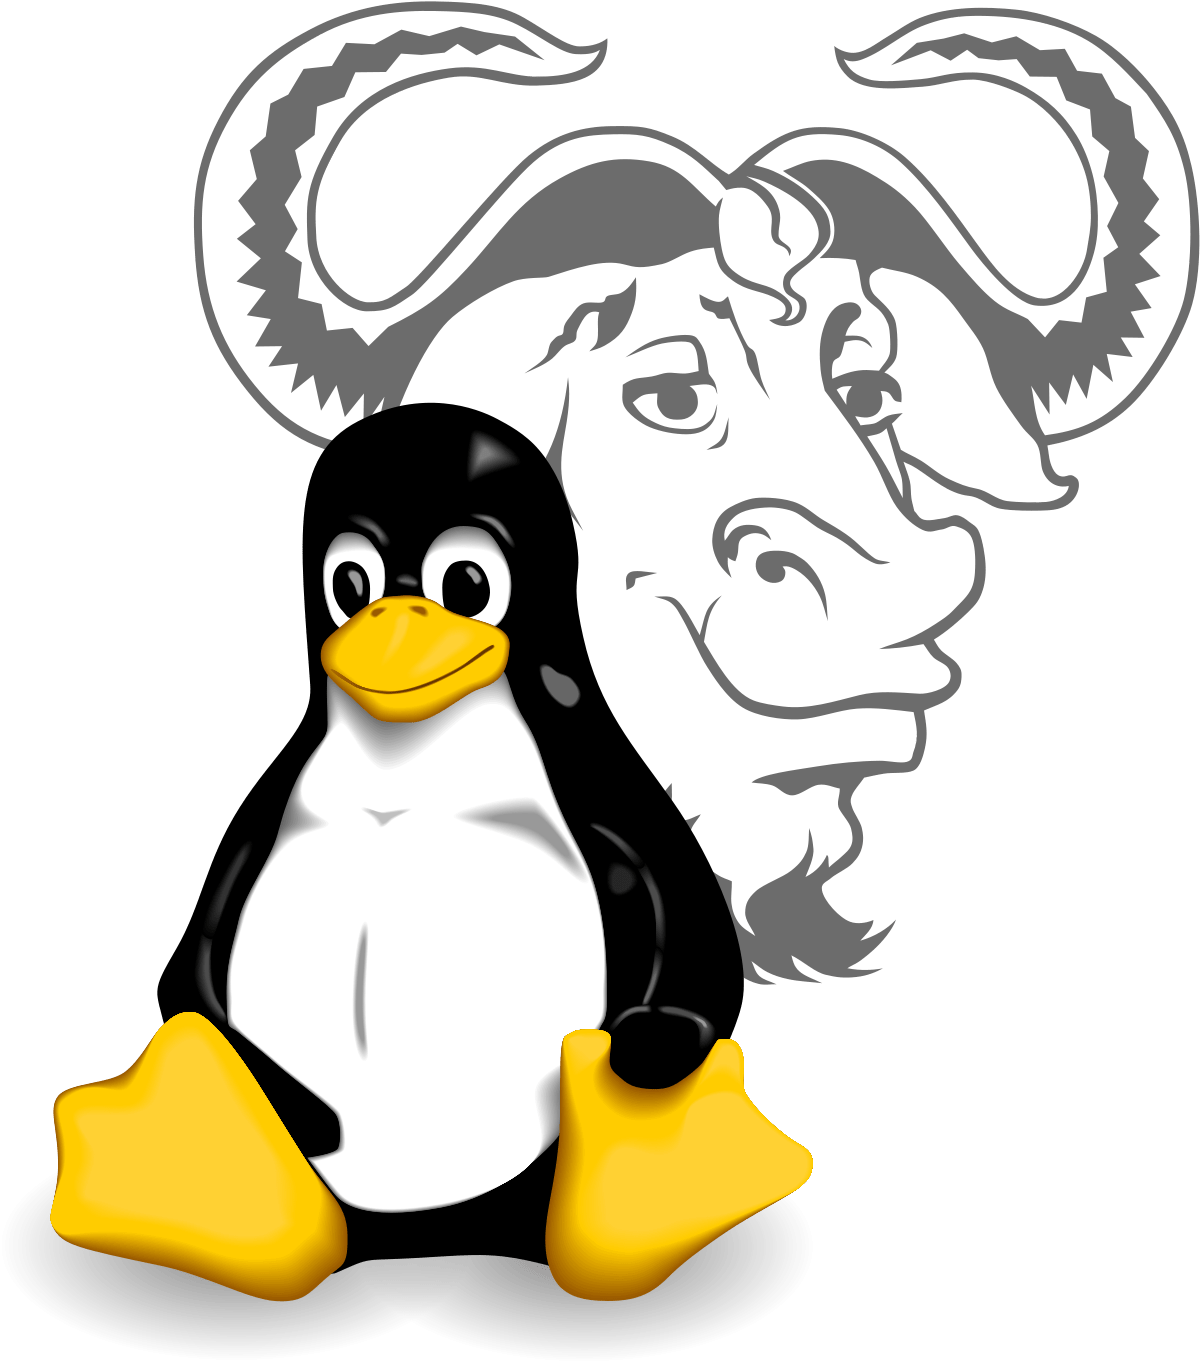 ARMA aka Omoikane GNU/Linux